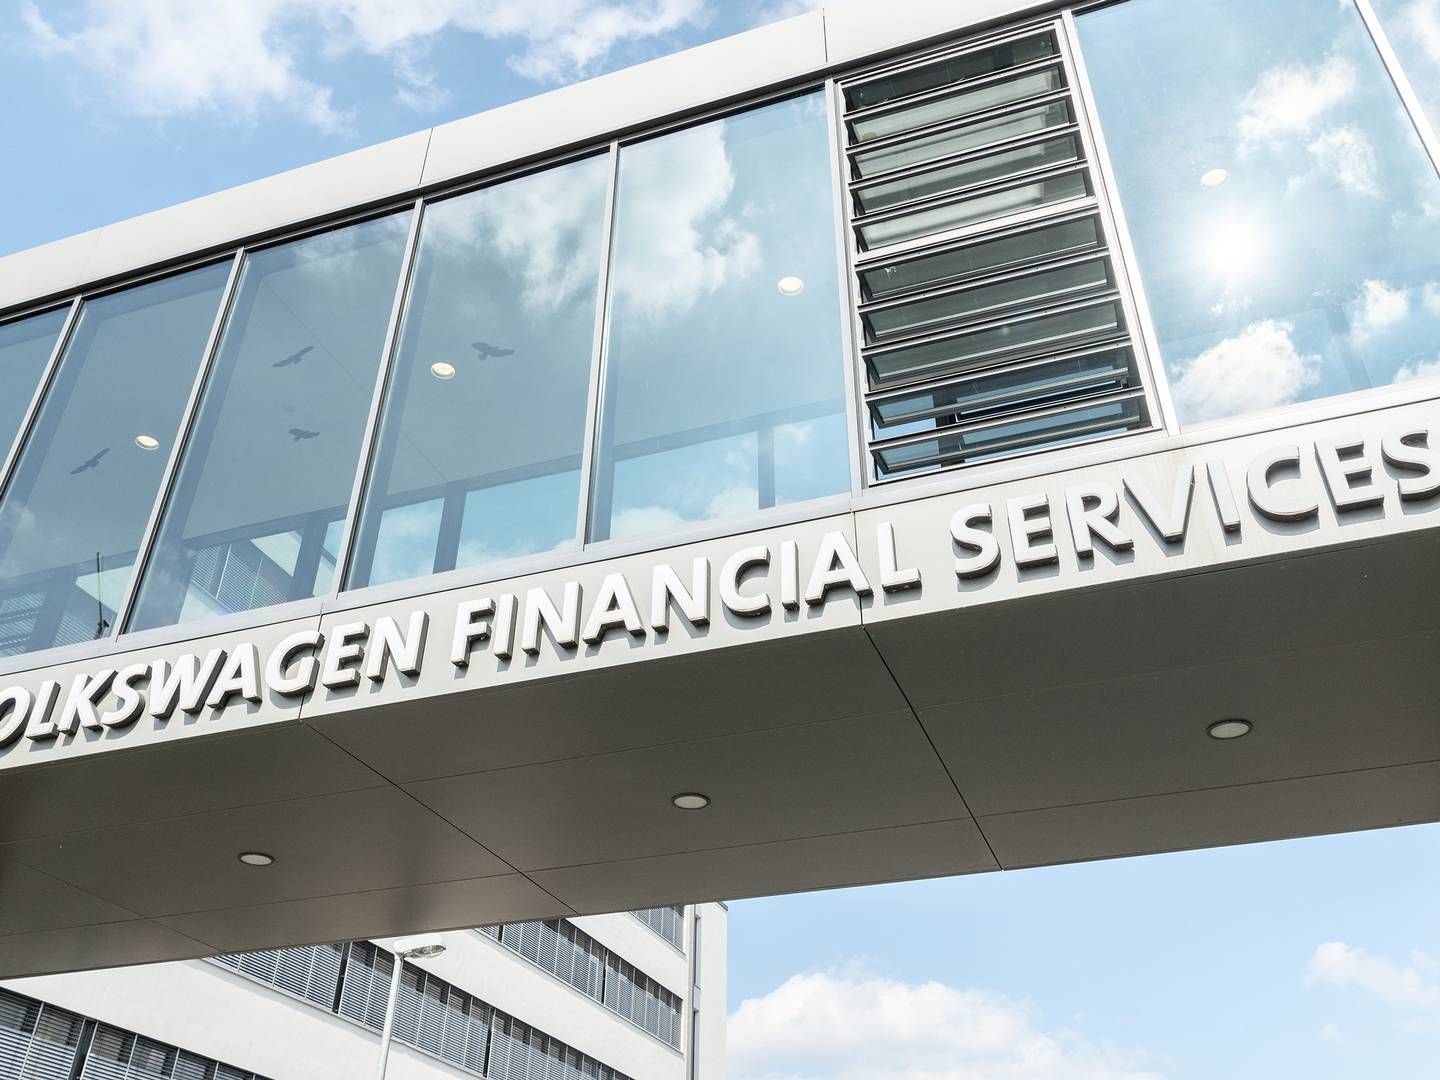 Gebäude von VWFS | Foto: Volkswagen Financial Services